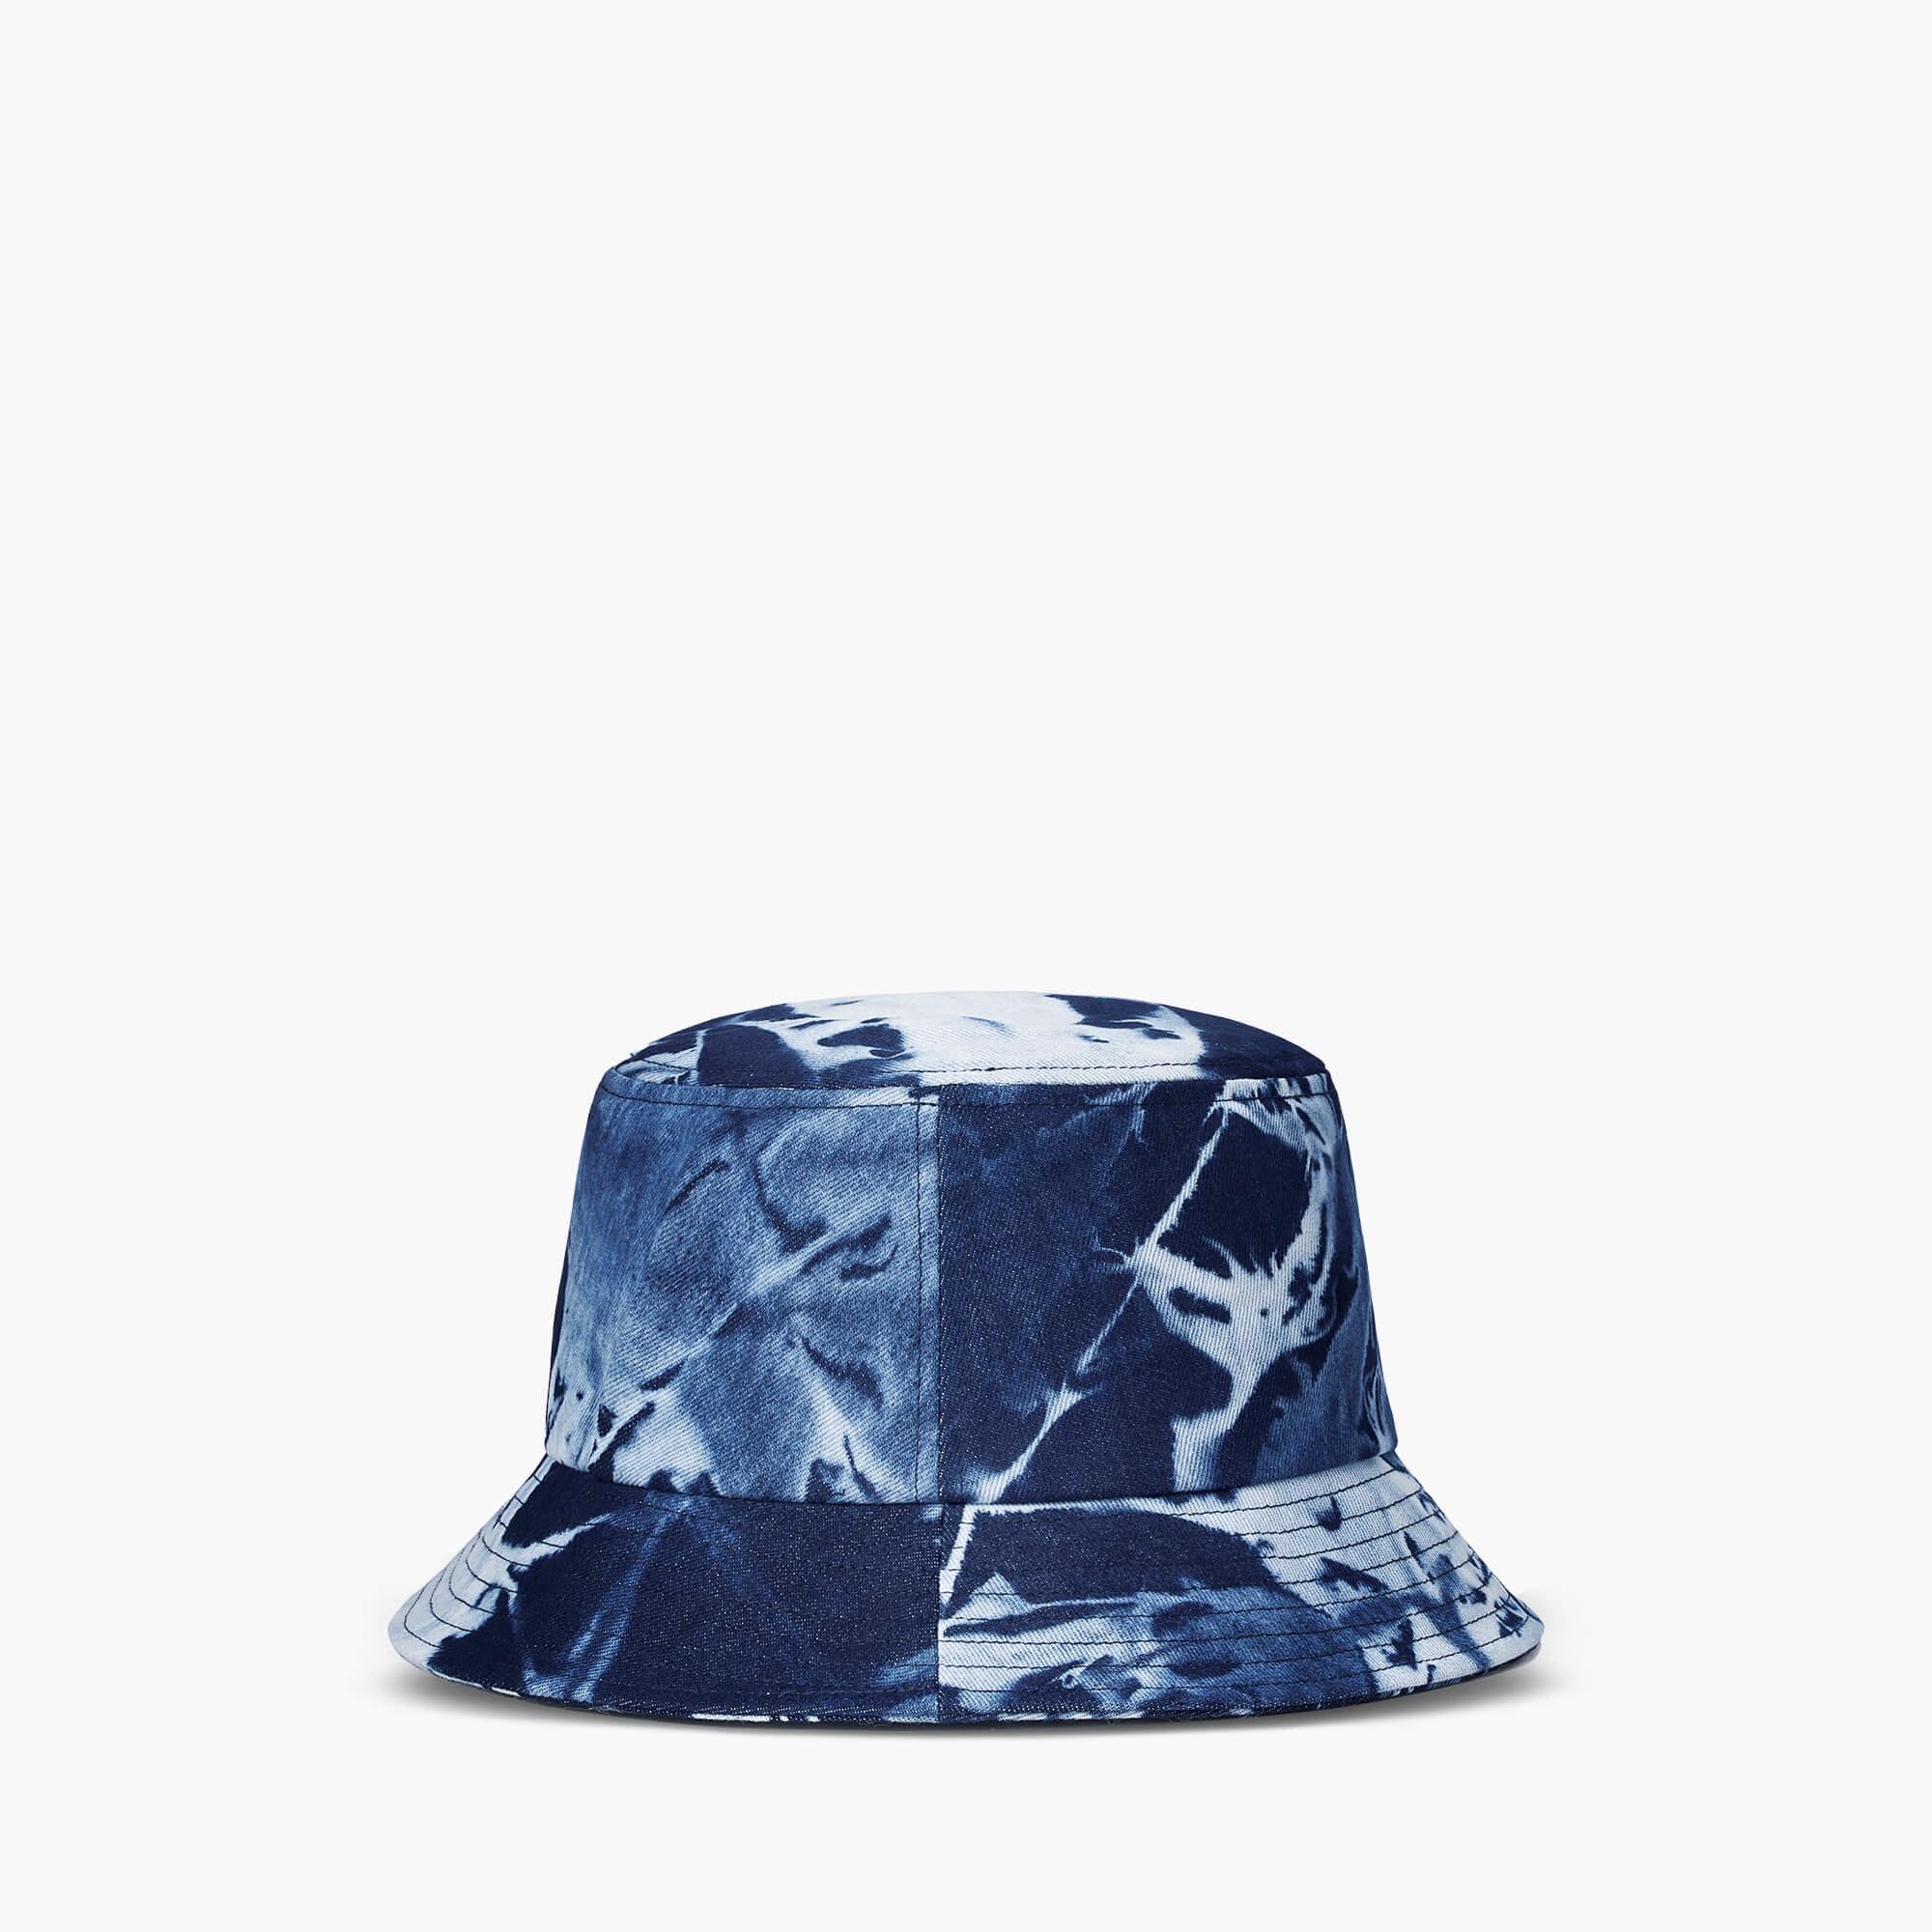 Denim Sun Hat For Summer